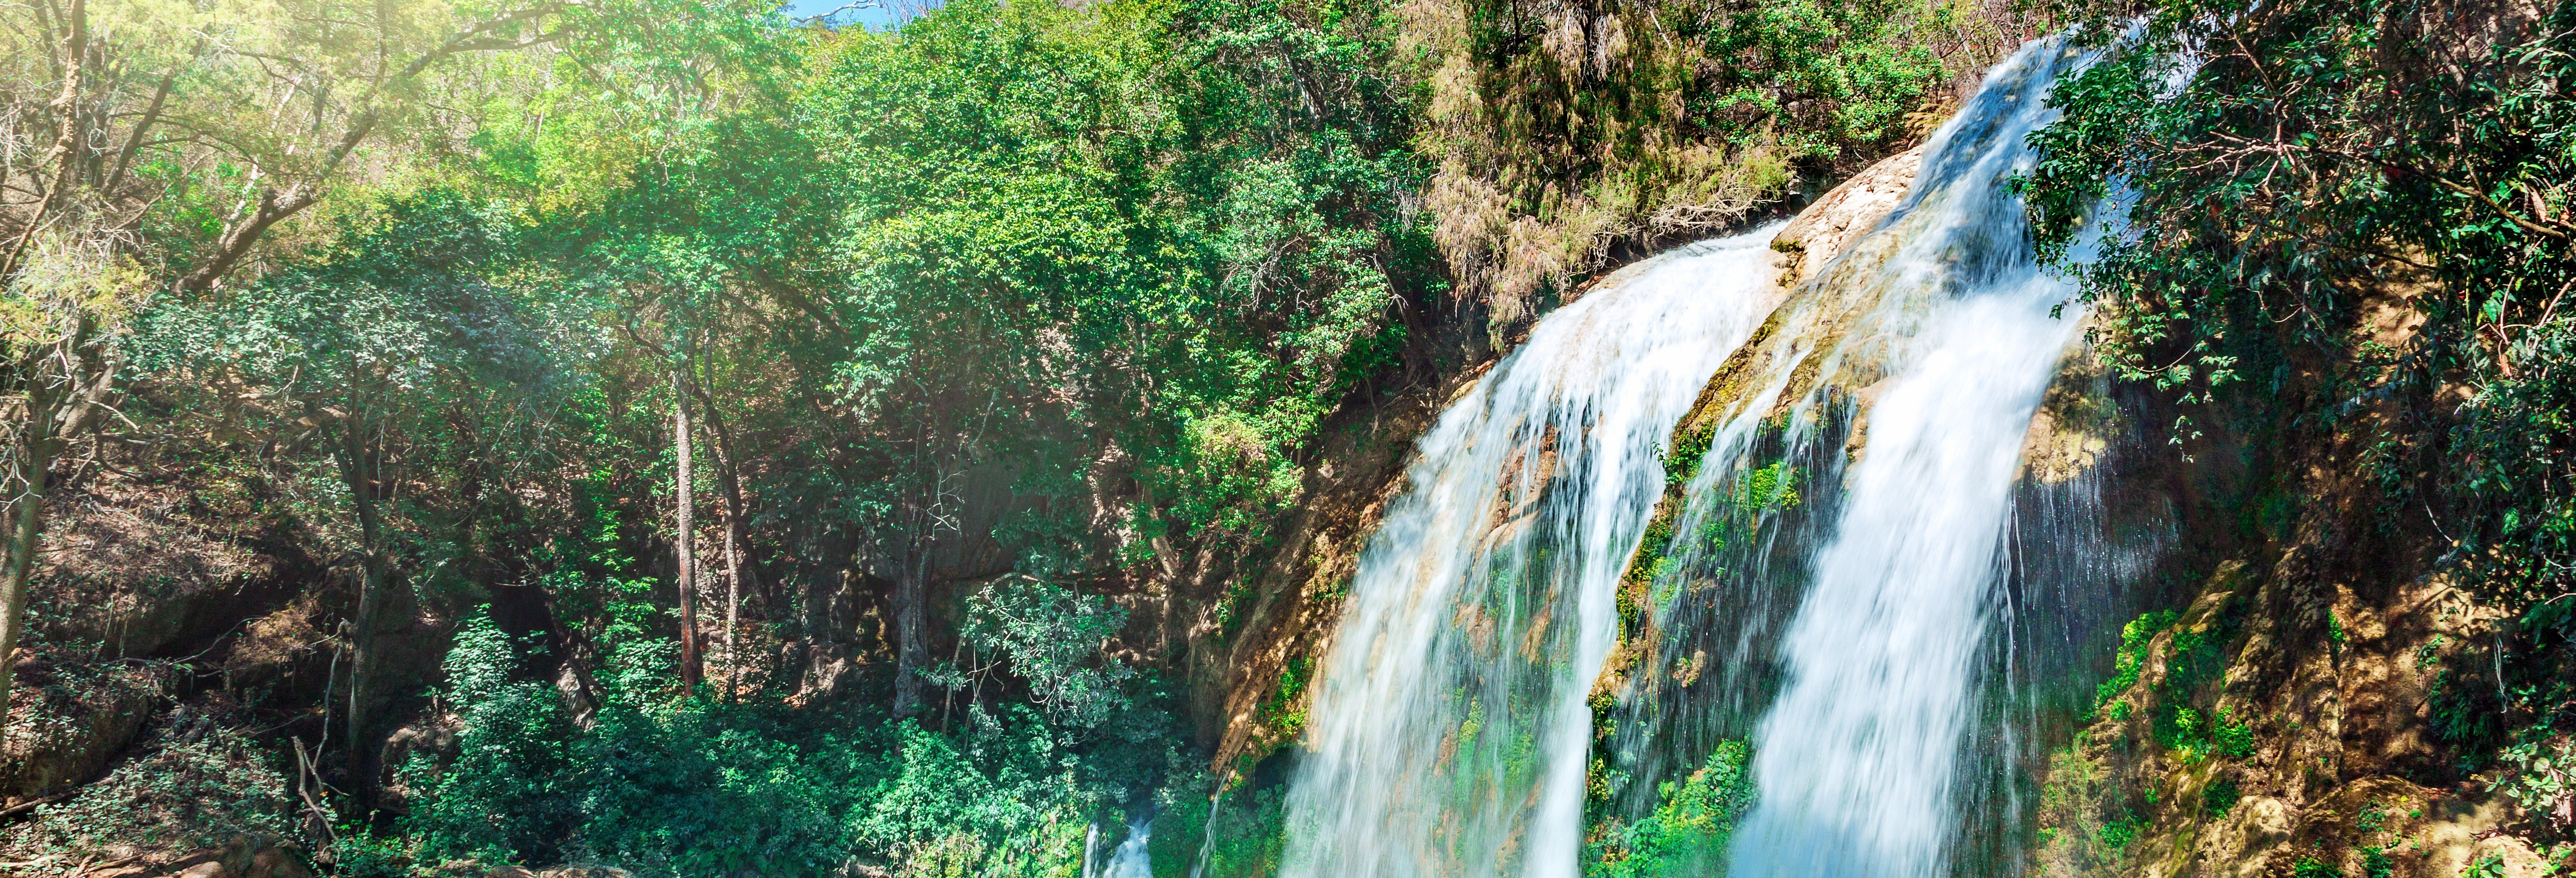 Montebello Lakes & El Chiflón Waterfalls Tour